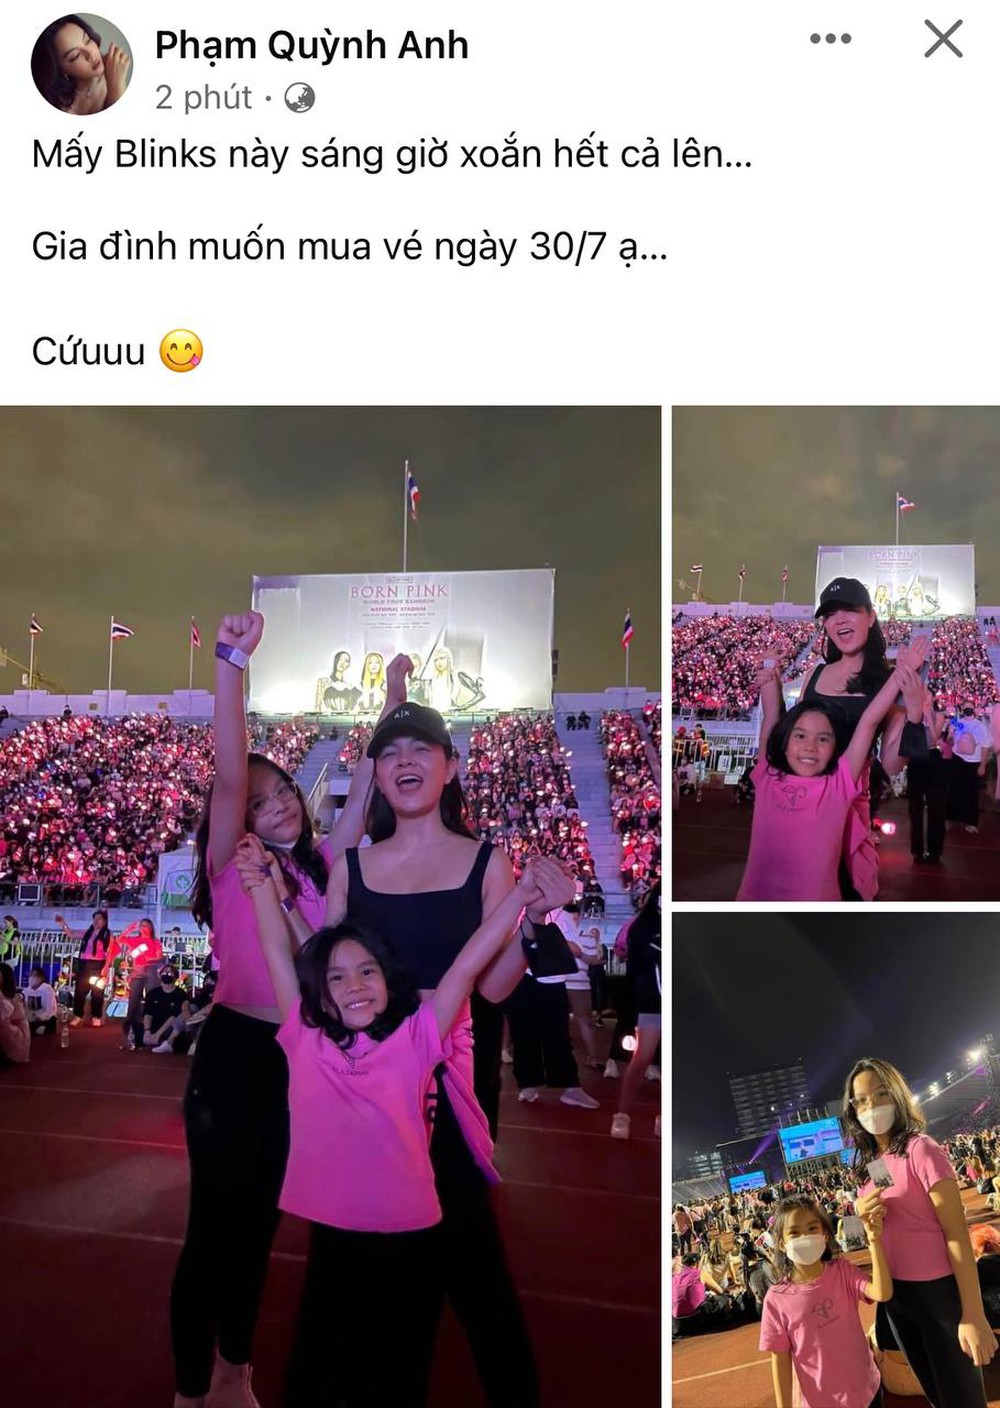 Siêu concert BLACKPINK tại Hà Nội: Lan Ngọc - Min áp lực cuộc chiến săn vé, netizen chờ phản ứng thành viên thứ 5 - Ảnh 3.